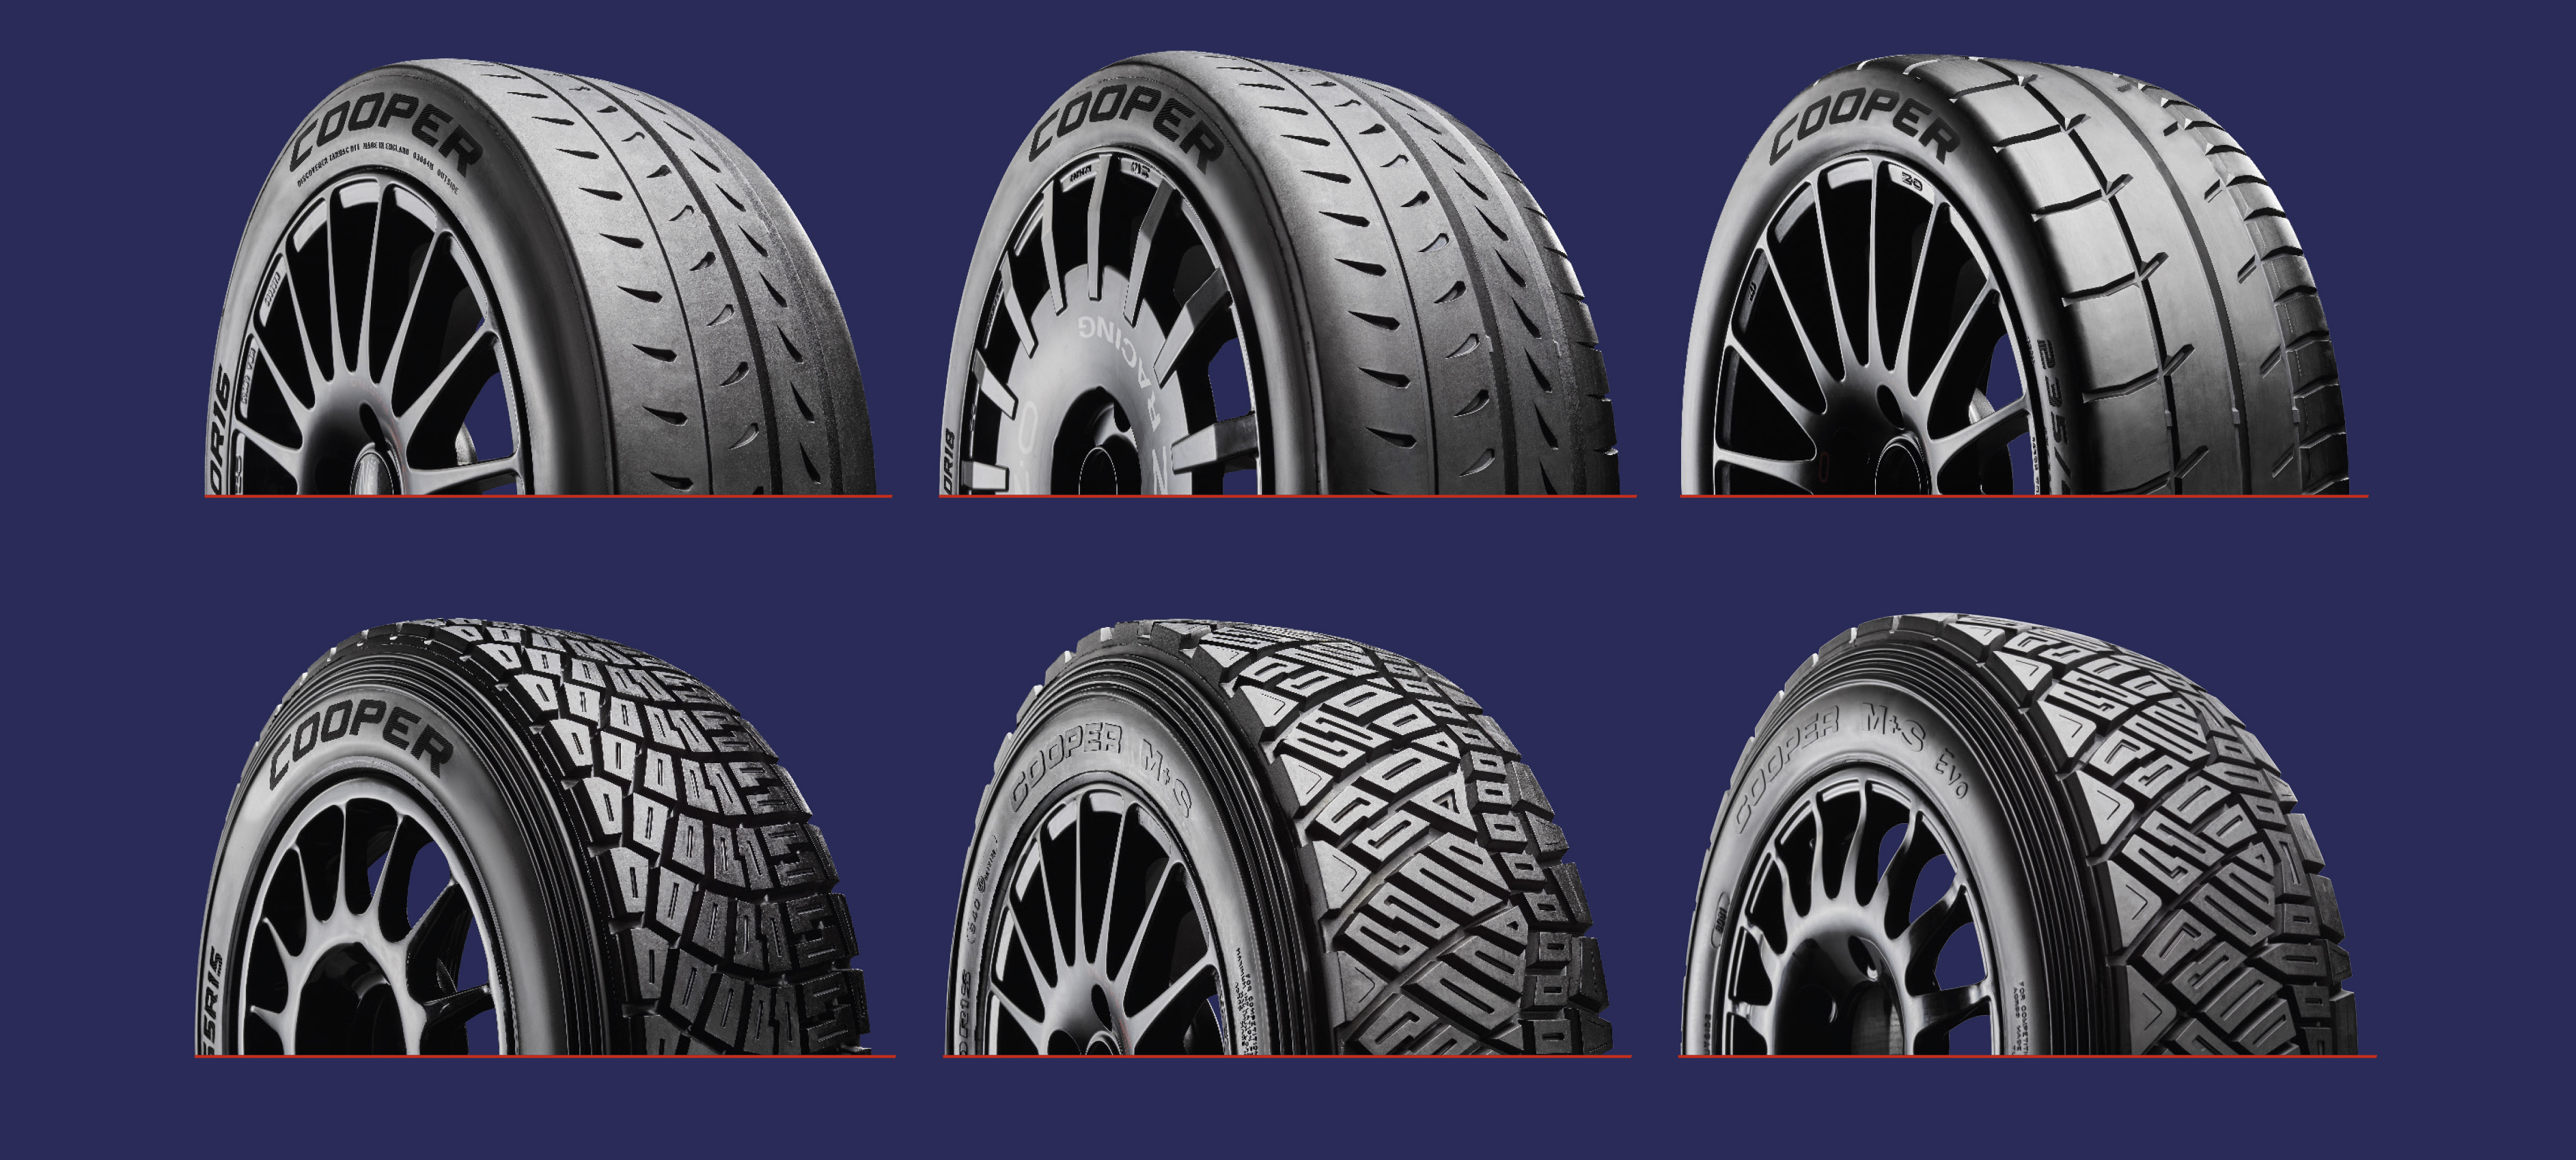 Durf salaris Microprocessor Cooper Tyre Europe lanceert uitgebreid nieuw assortiment rallybanden voor  gebruik op asfalt, klassiek asfalt, grind en modder en sneeuw | Business  Wire